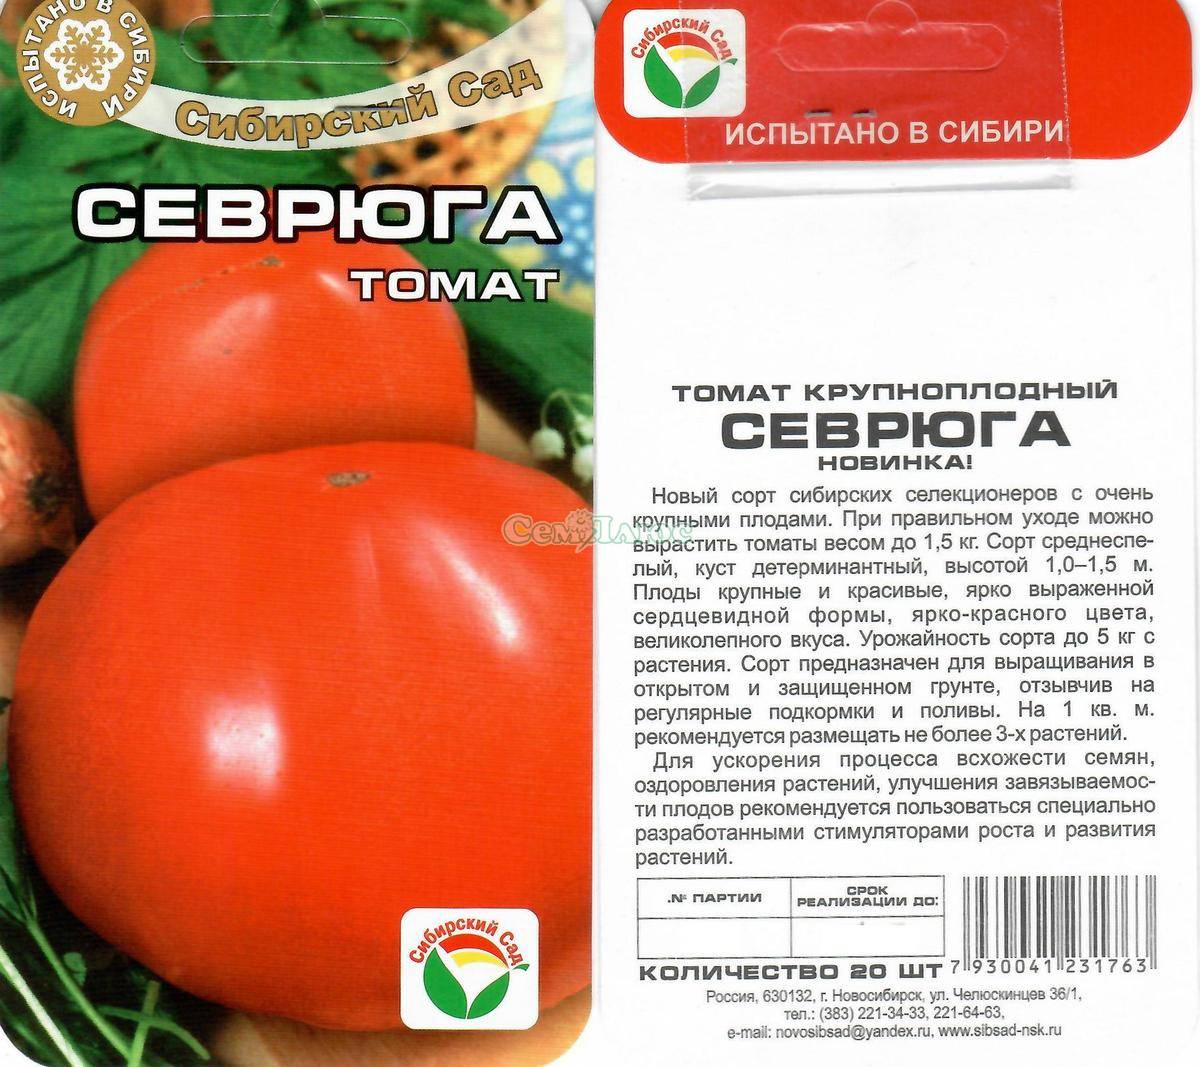 Томаты "пудовичок сахарный": описание и характеристики сорта, уход за помидорами и фото русский фермер